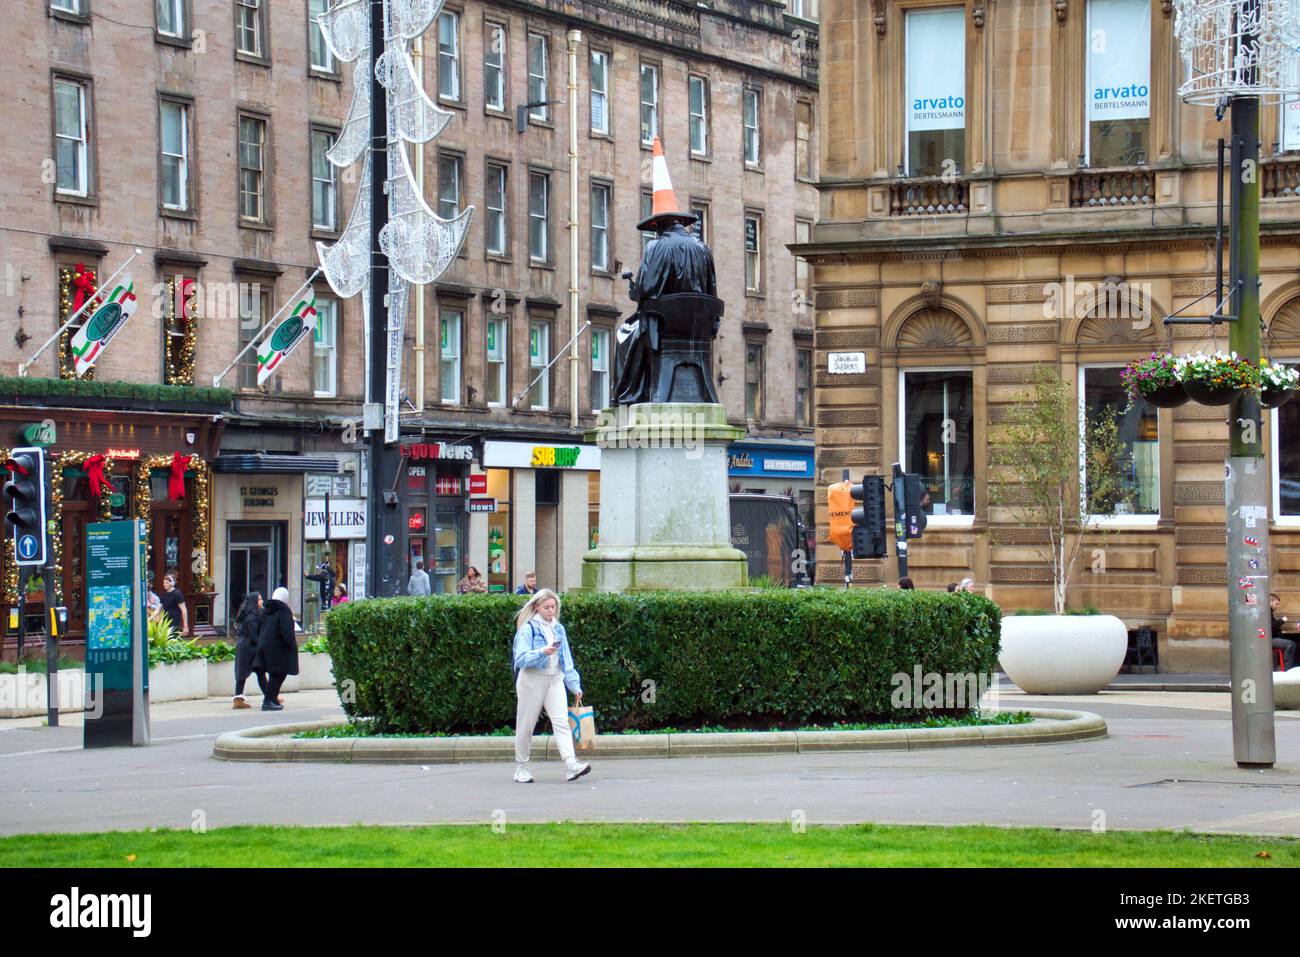 La statue de James Watt sur la place George a donné le traitement emblématique de la tête conique locale et l'apparence d'un dunce Banque D'Images